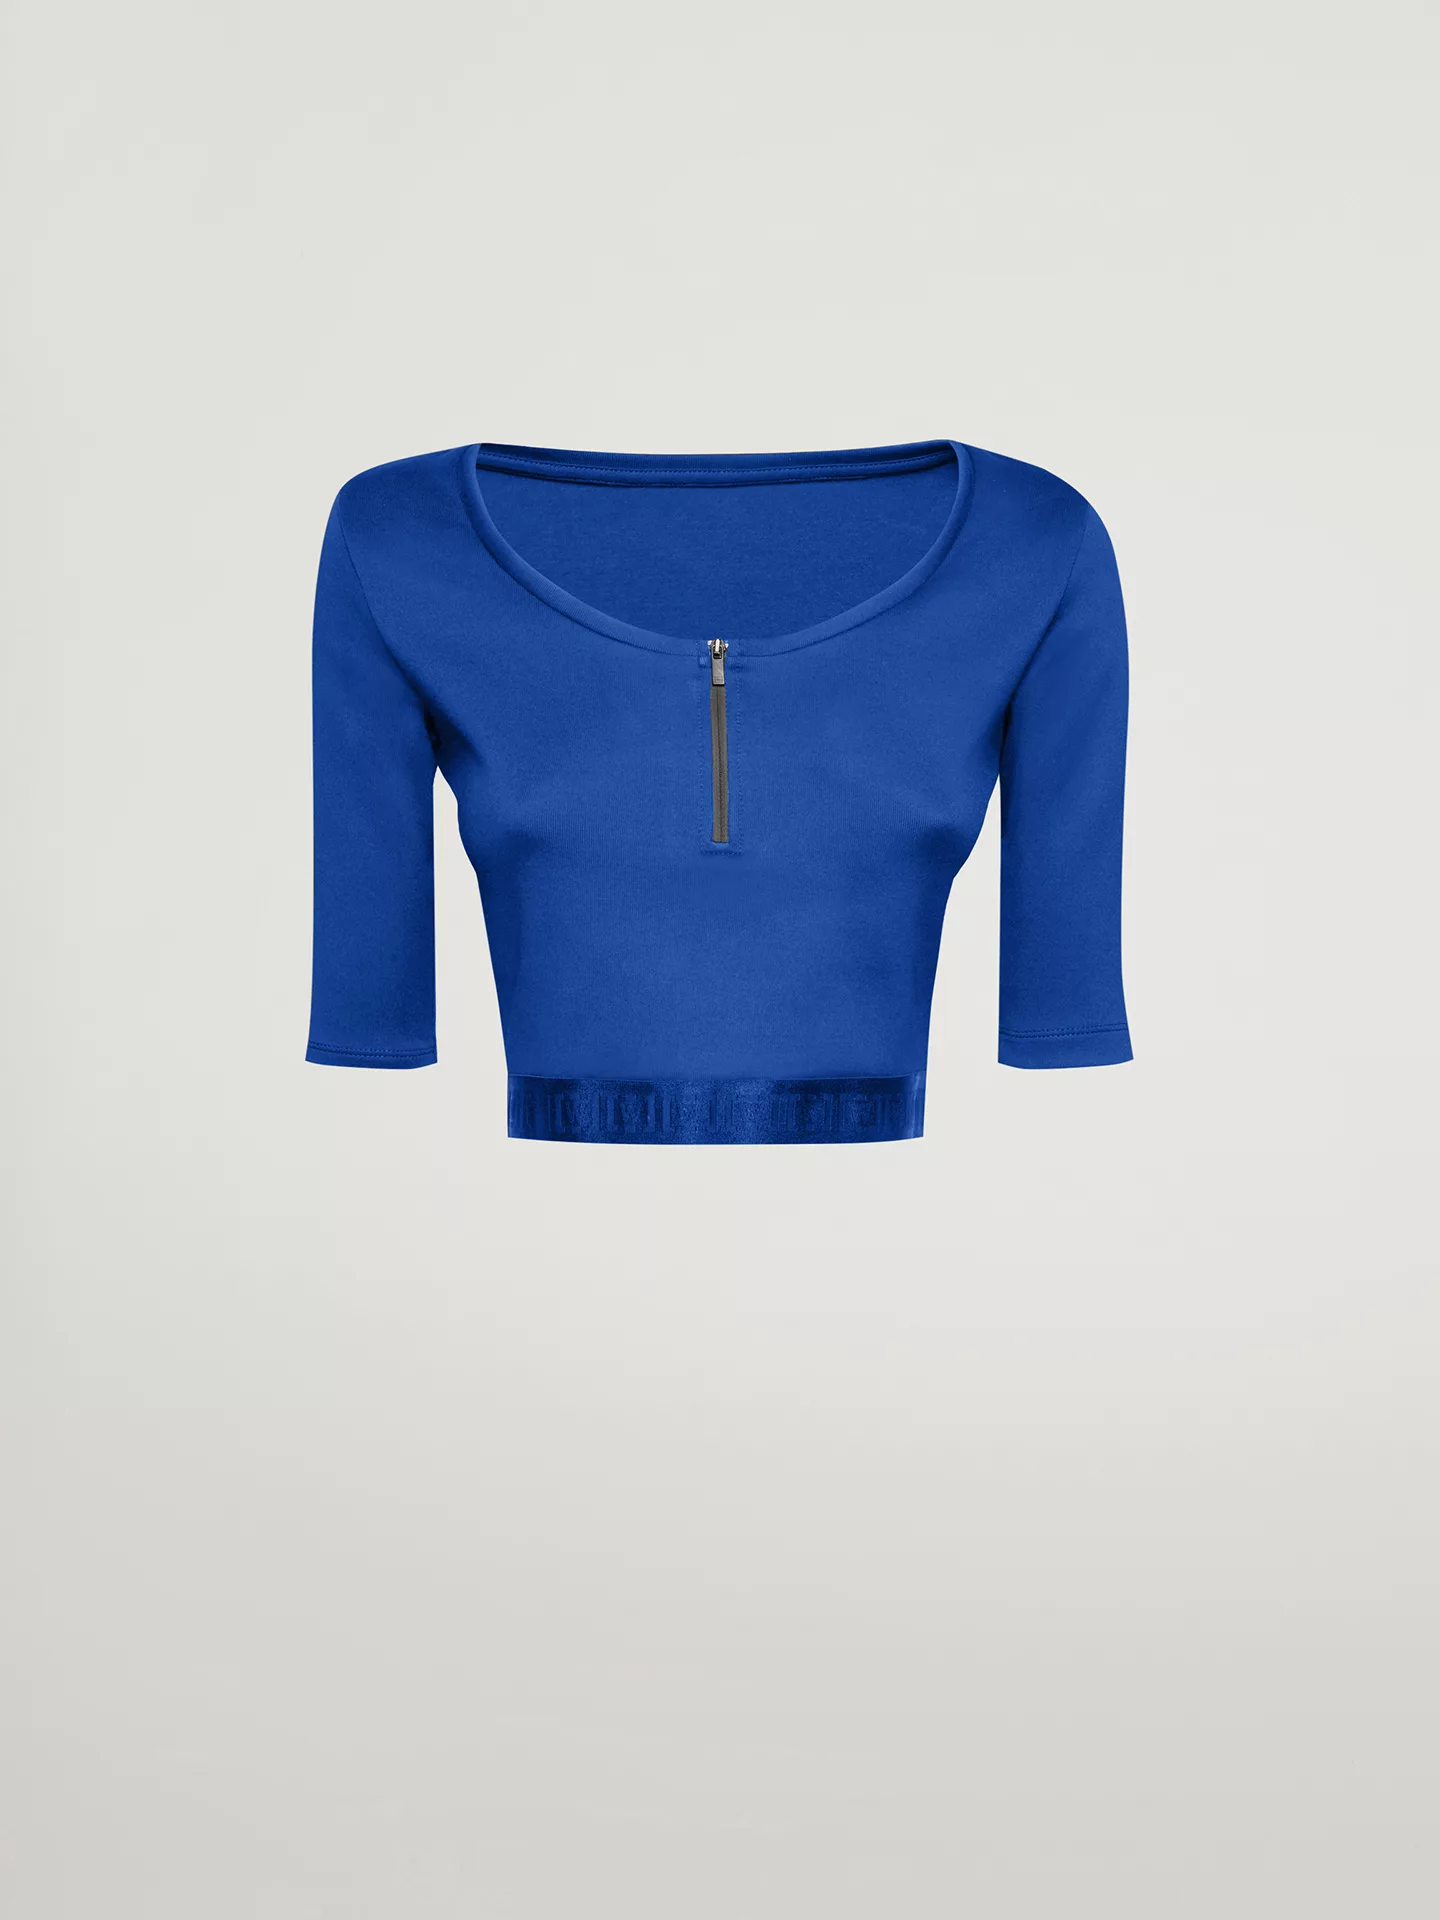 Wolford - Mighty 80s Top Short Sleeves, Frau, dazzling blue, Größe: L günstig online kaufen